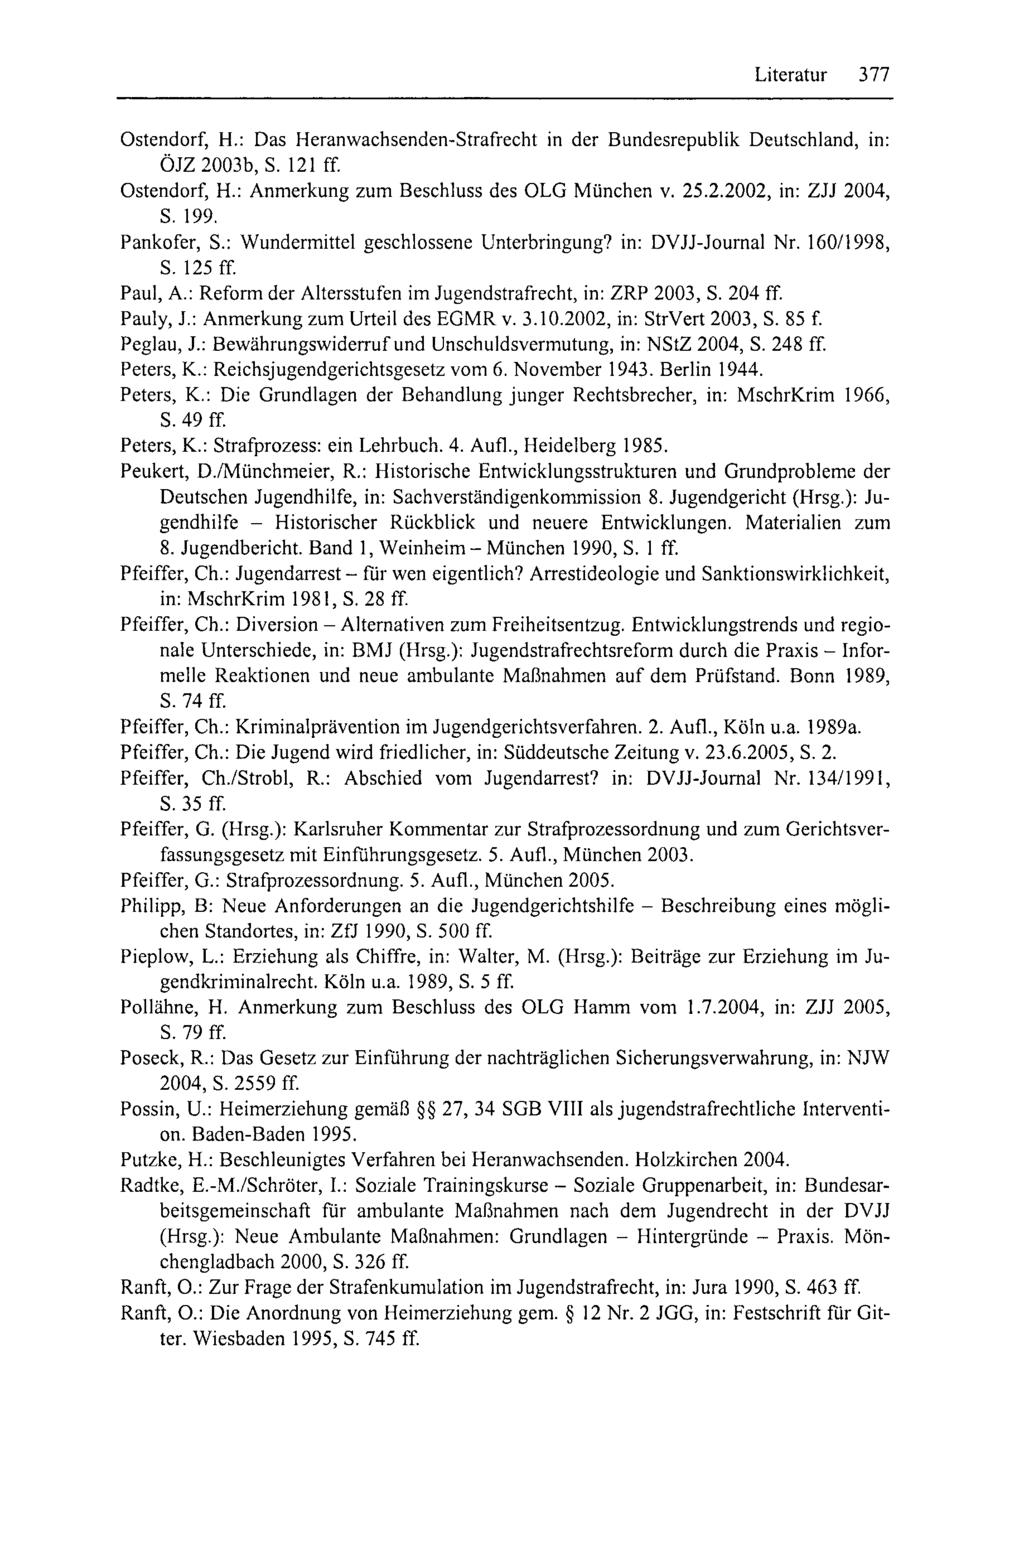 Literatur 377 Ostendorf, H.: Das Heranwachsenden-Strafrecht in der BundesrepubHk Deutschland, in: ÖJZ 2003b, S. 121 ff Ostendorf, H.: Anmerkung zum Beschluss des OLG München v. 25.2.2002, in: ZJJ 2004, S.